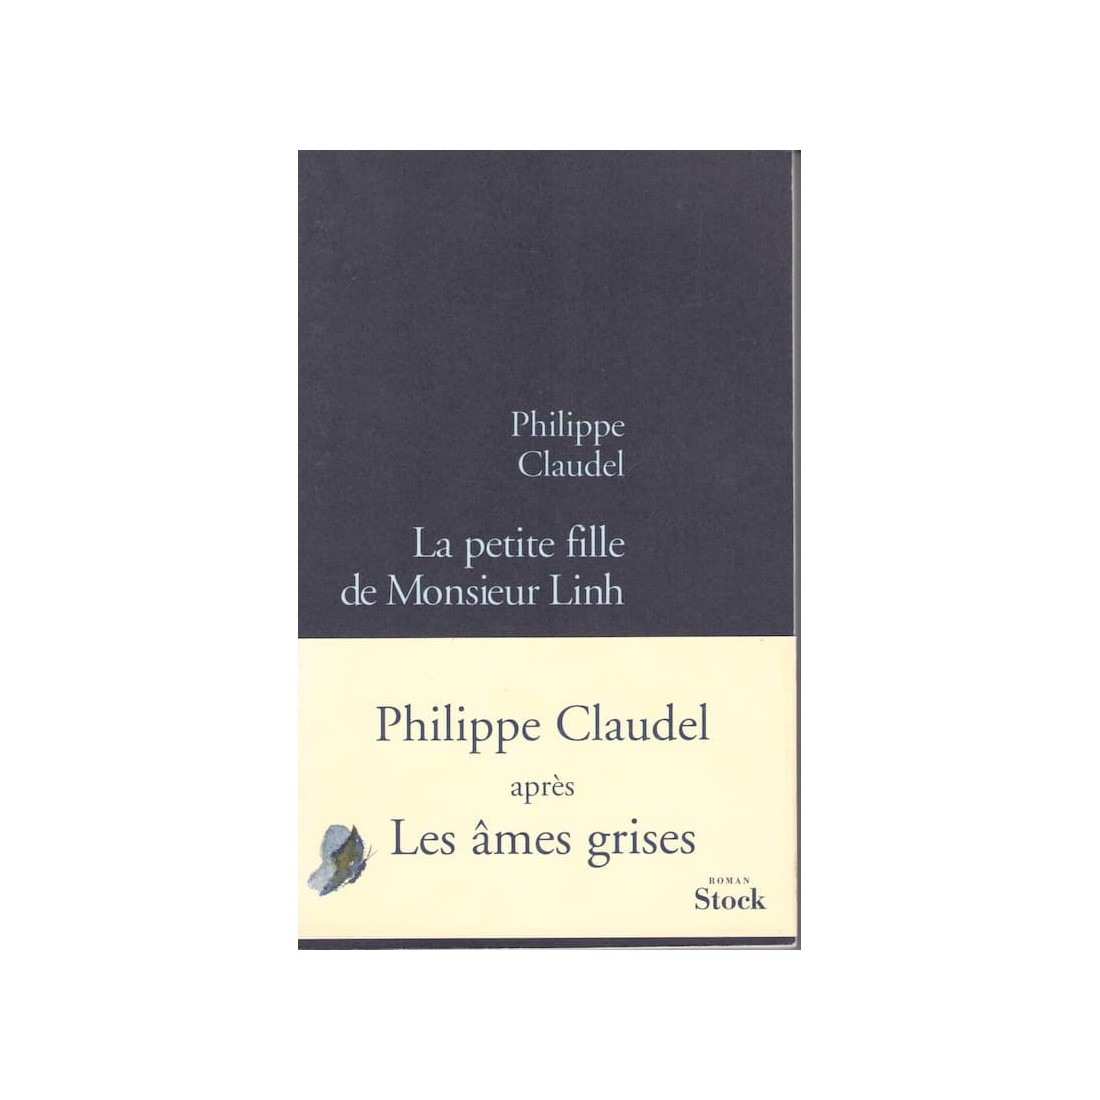 La Petite fille de Monsieur Linh, Philippe Claudel